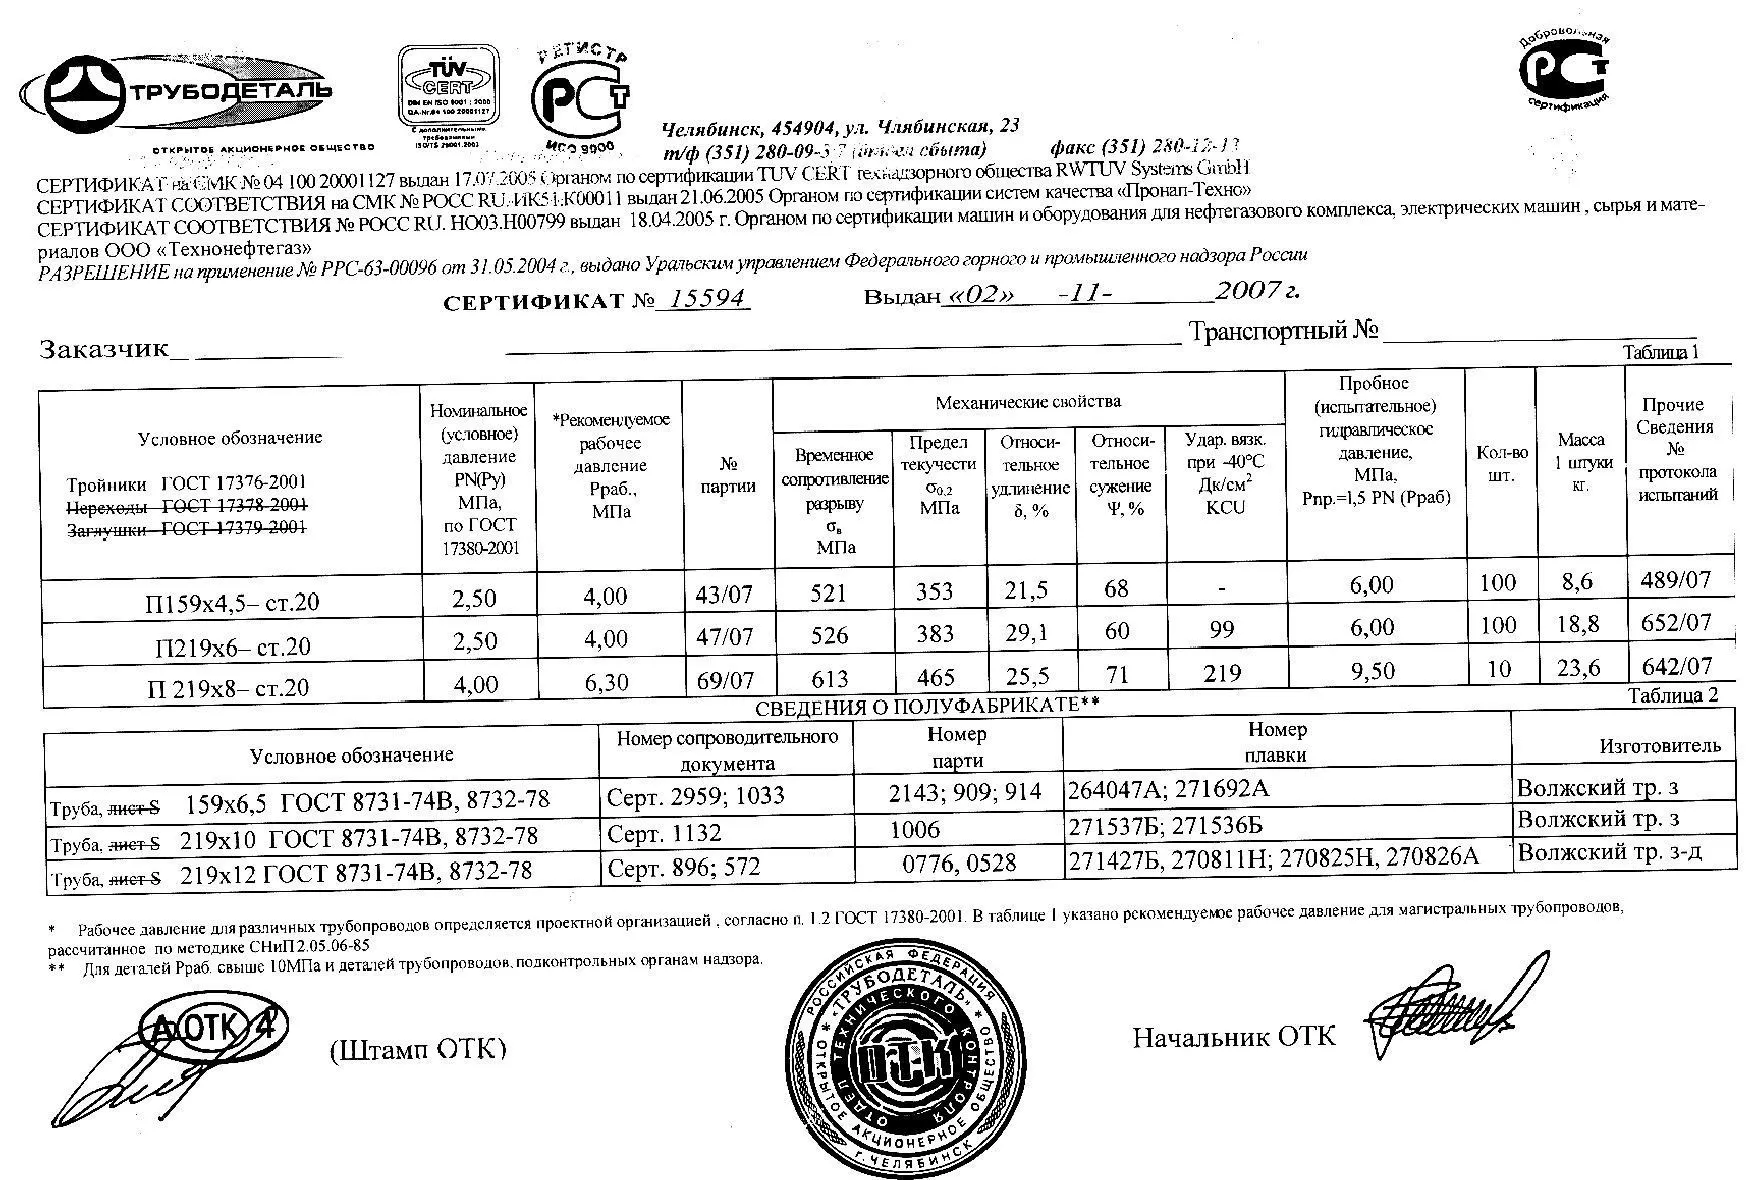 Сертификат на тройники П219х8 от 11-07